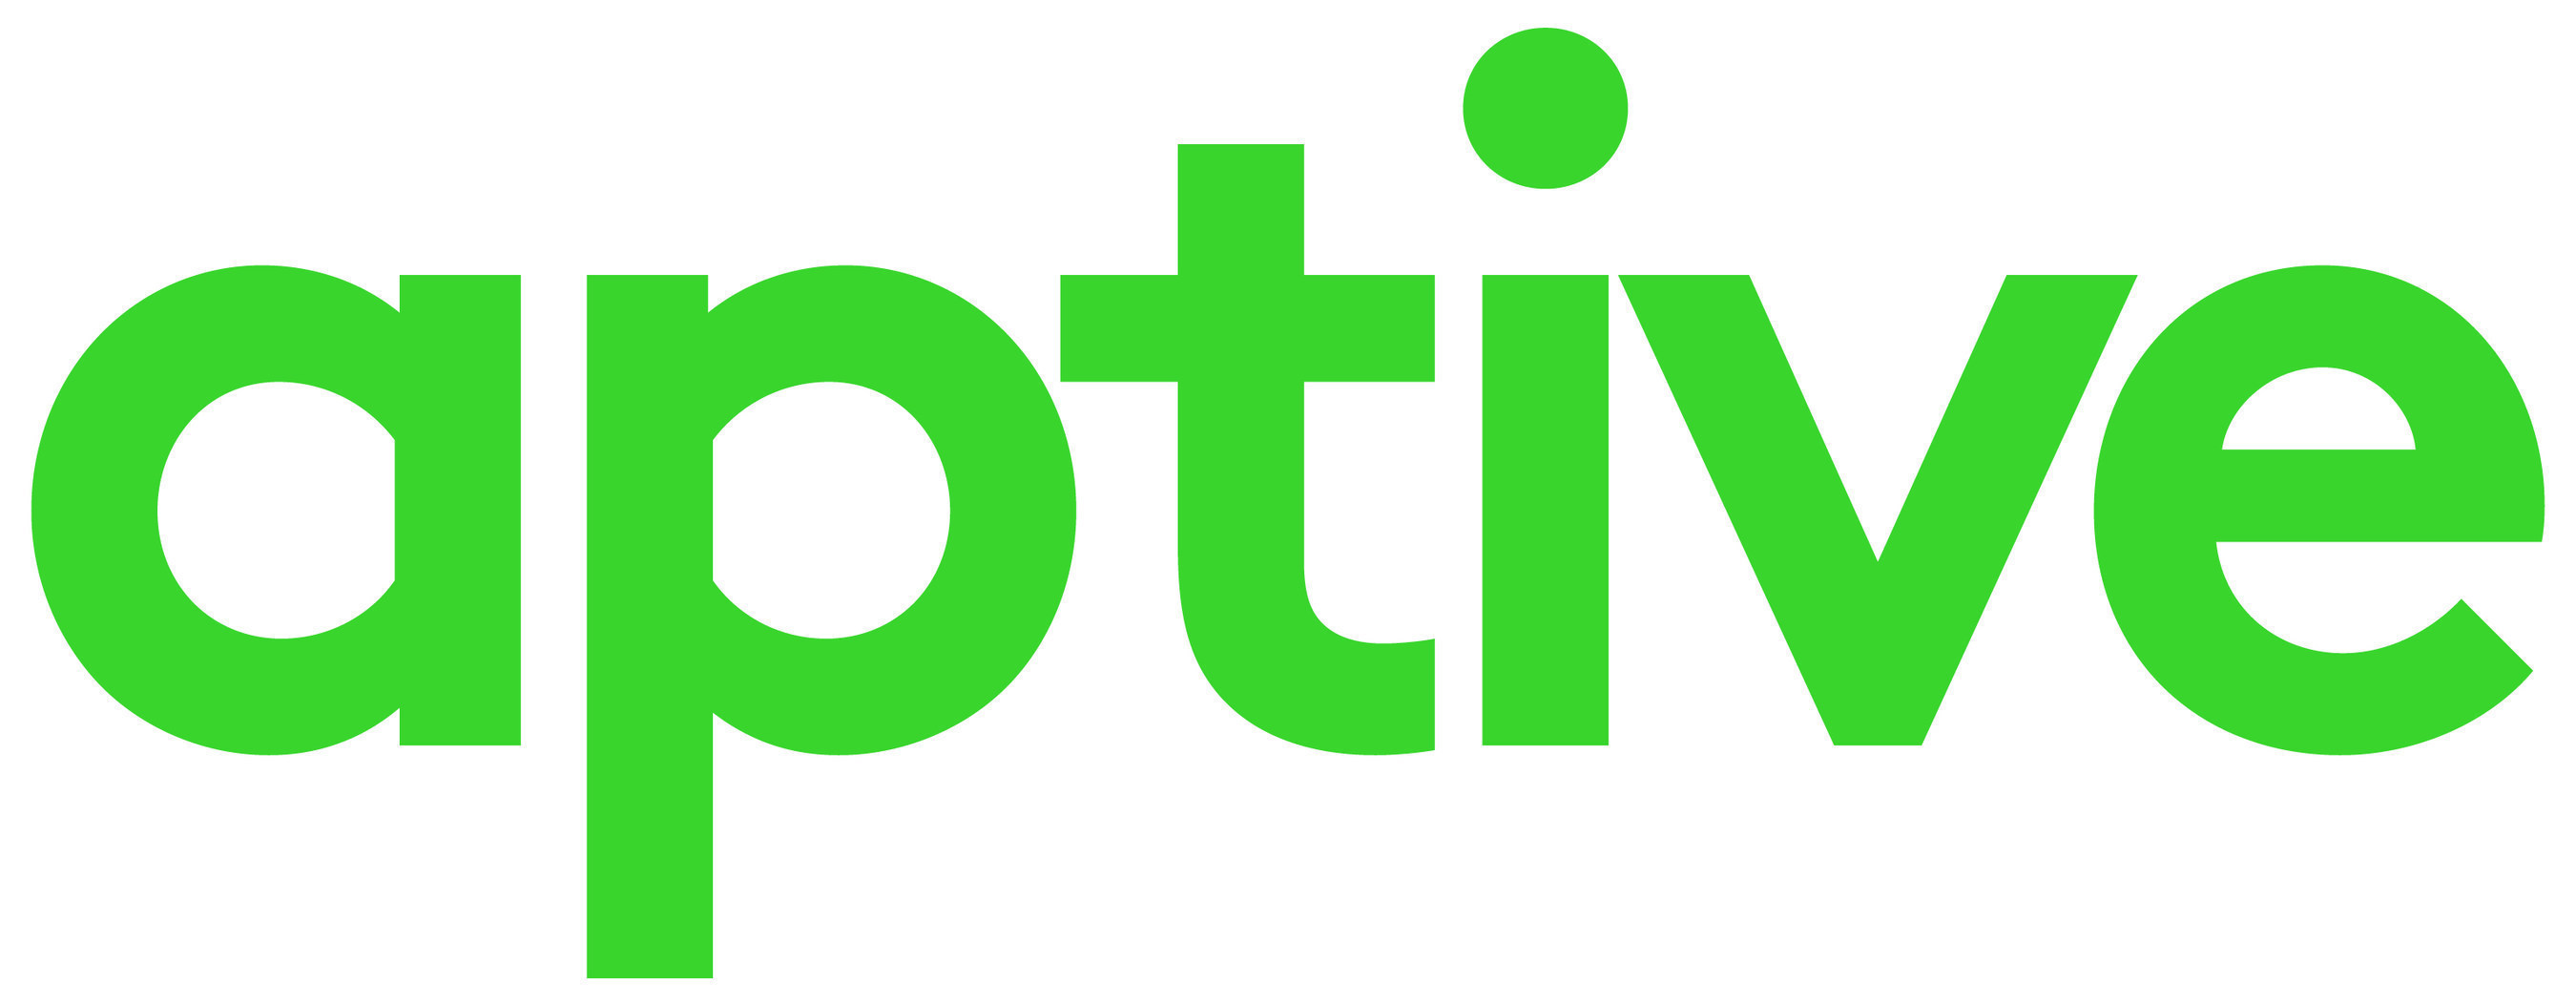 Aptive logo